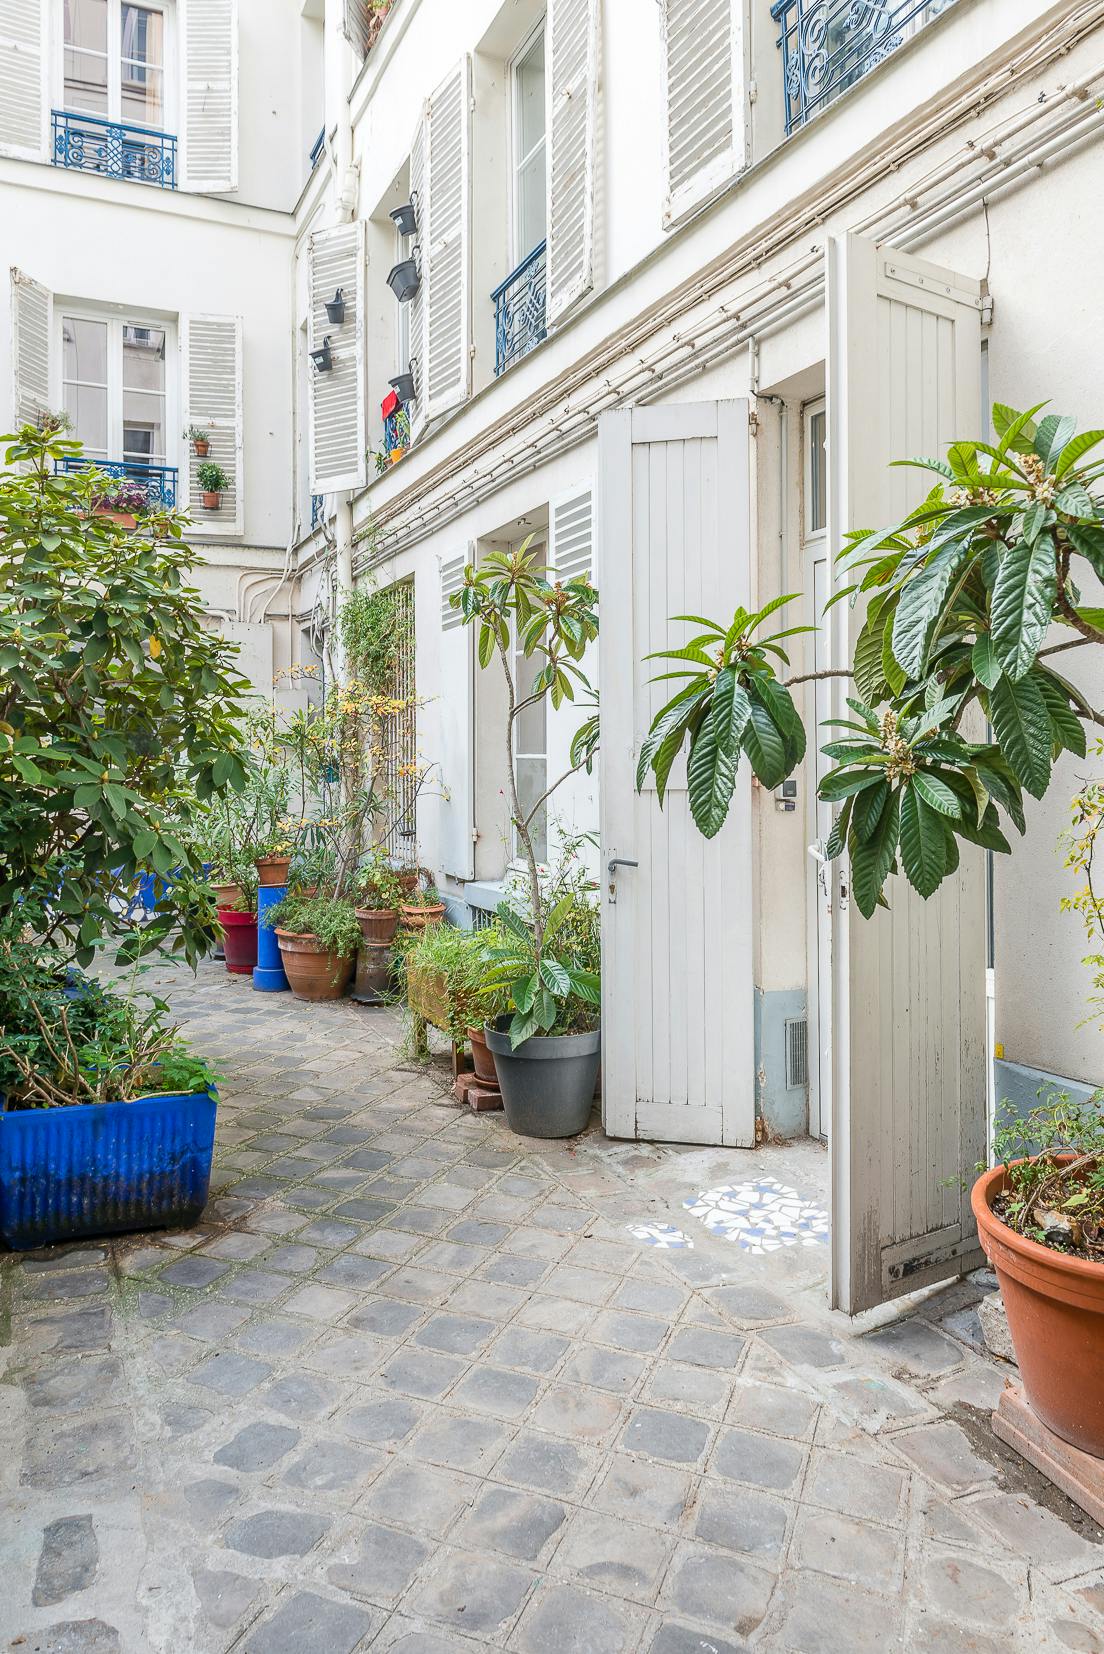 location-meublee-cour-immeuble-plantes-vegetation-driss-pariscabane.jpg